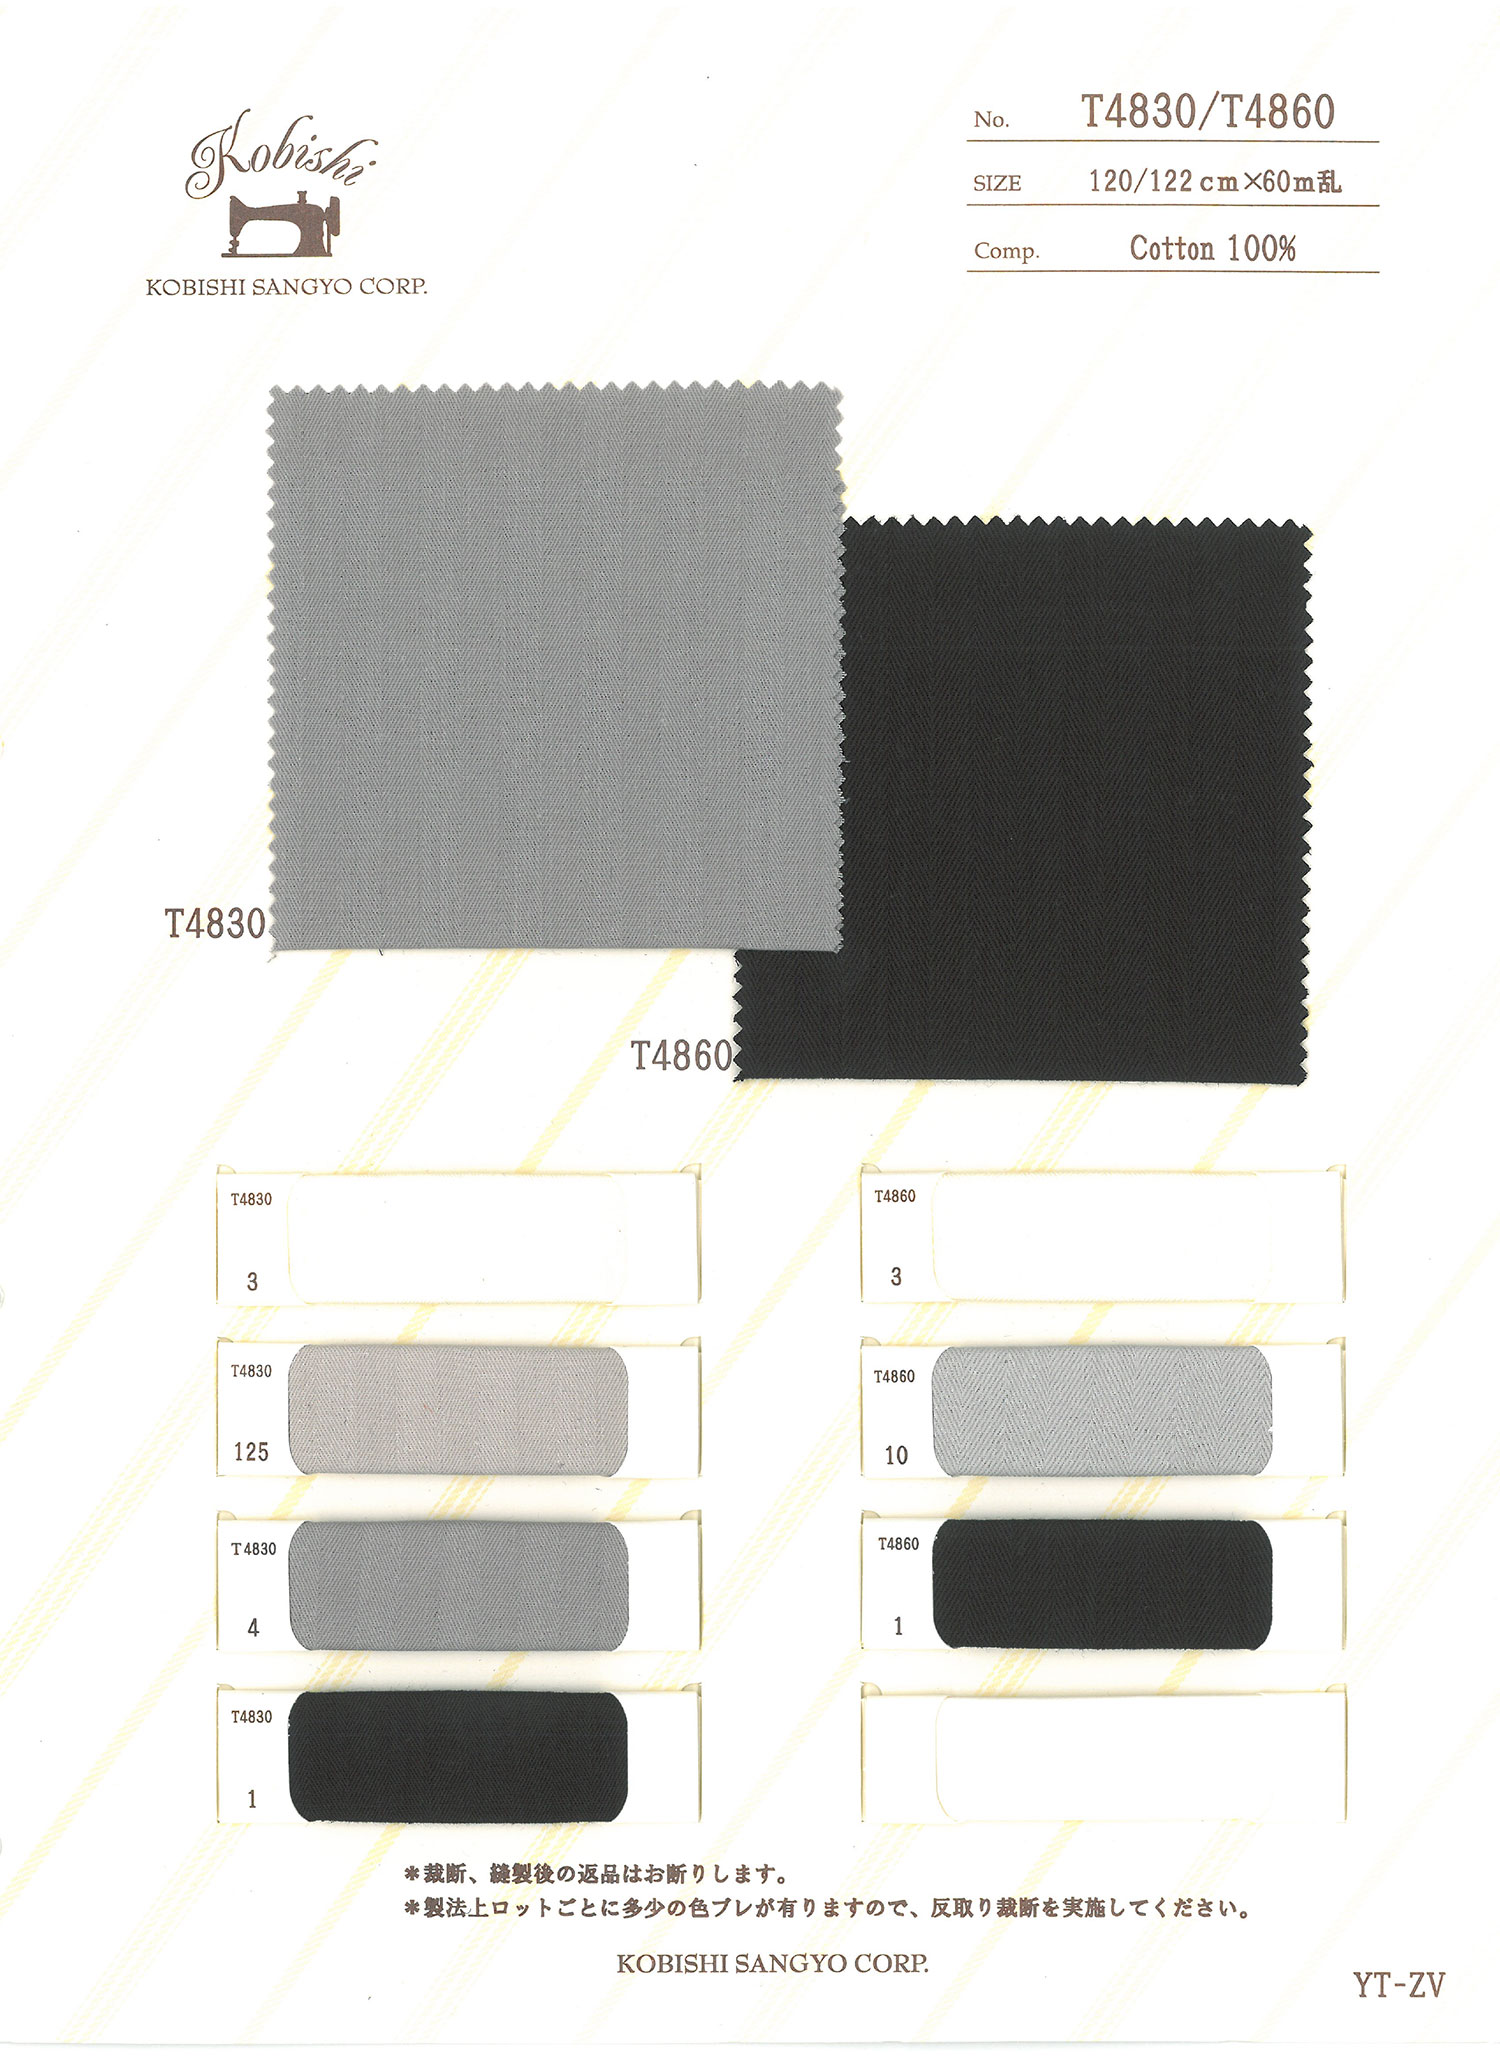 T4860 Forro De Bolso De Tecido Sugi Aya Usado Com Linha Esquerda E Direita[Forro Do Bolso] Ueyama Textile